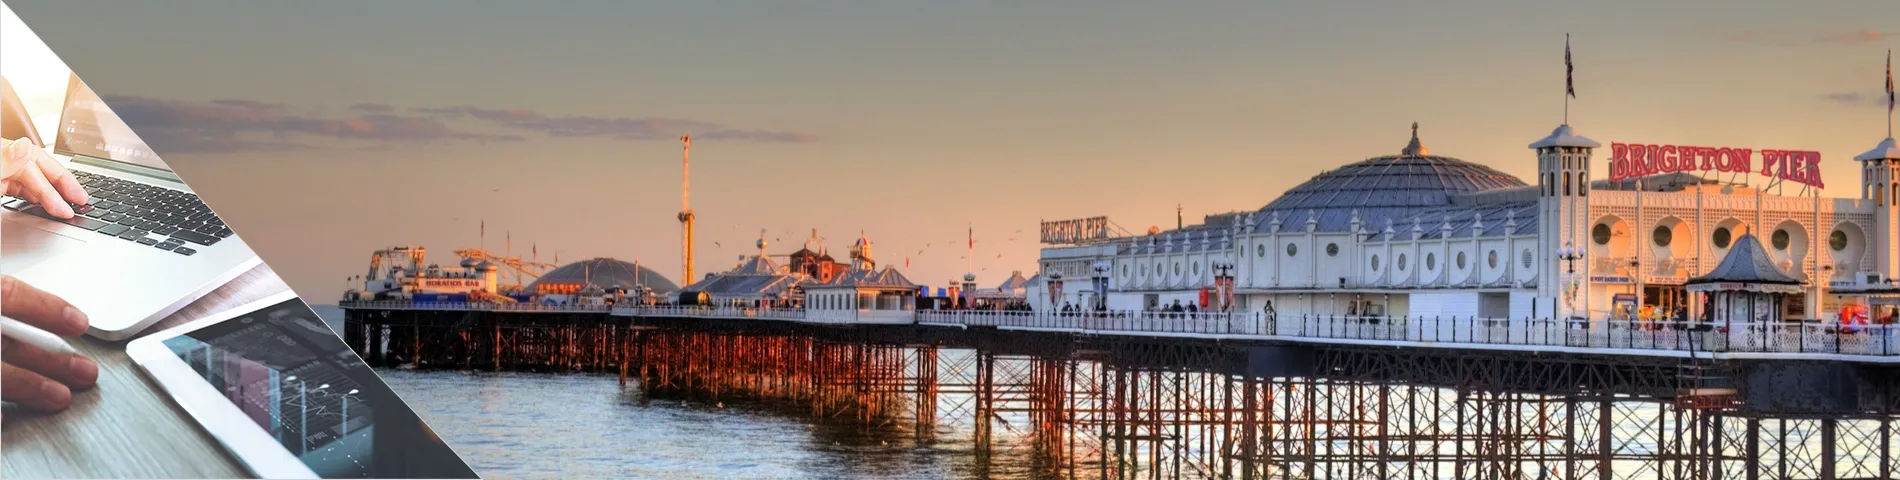 Brighton - Angličtina a digitální média